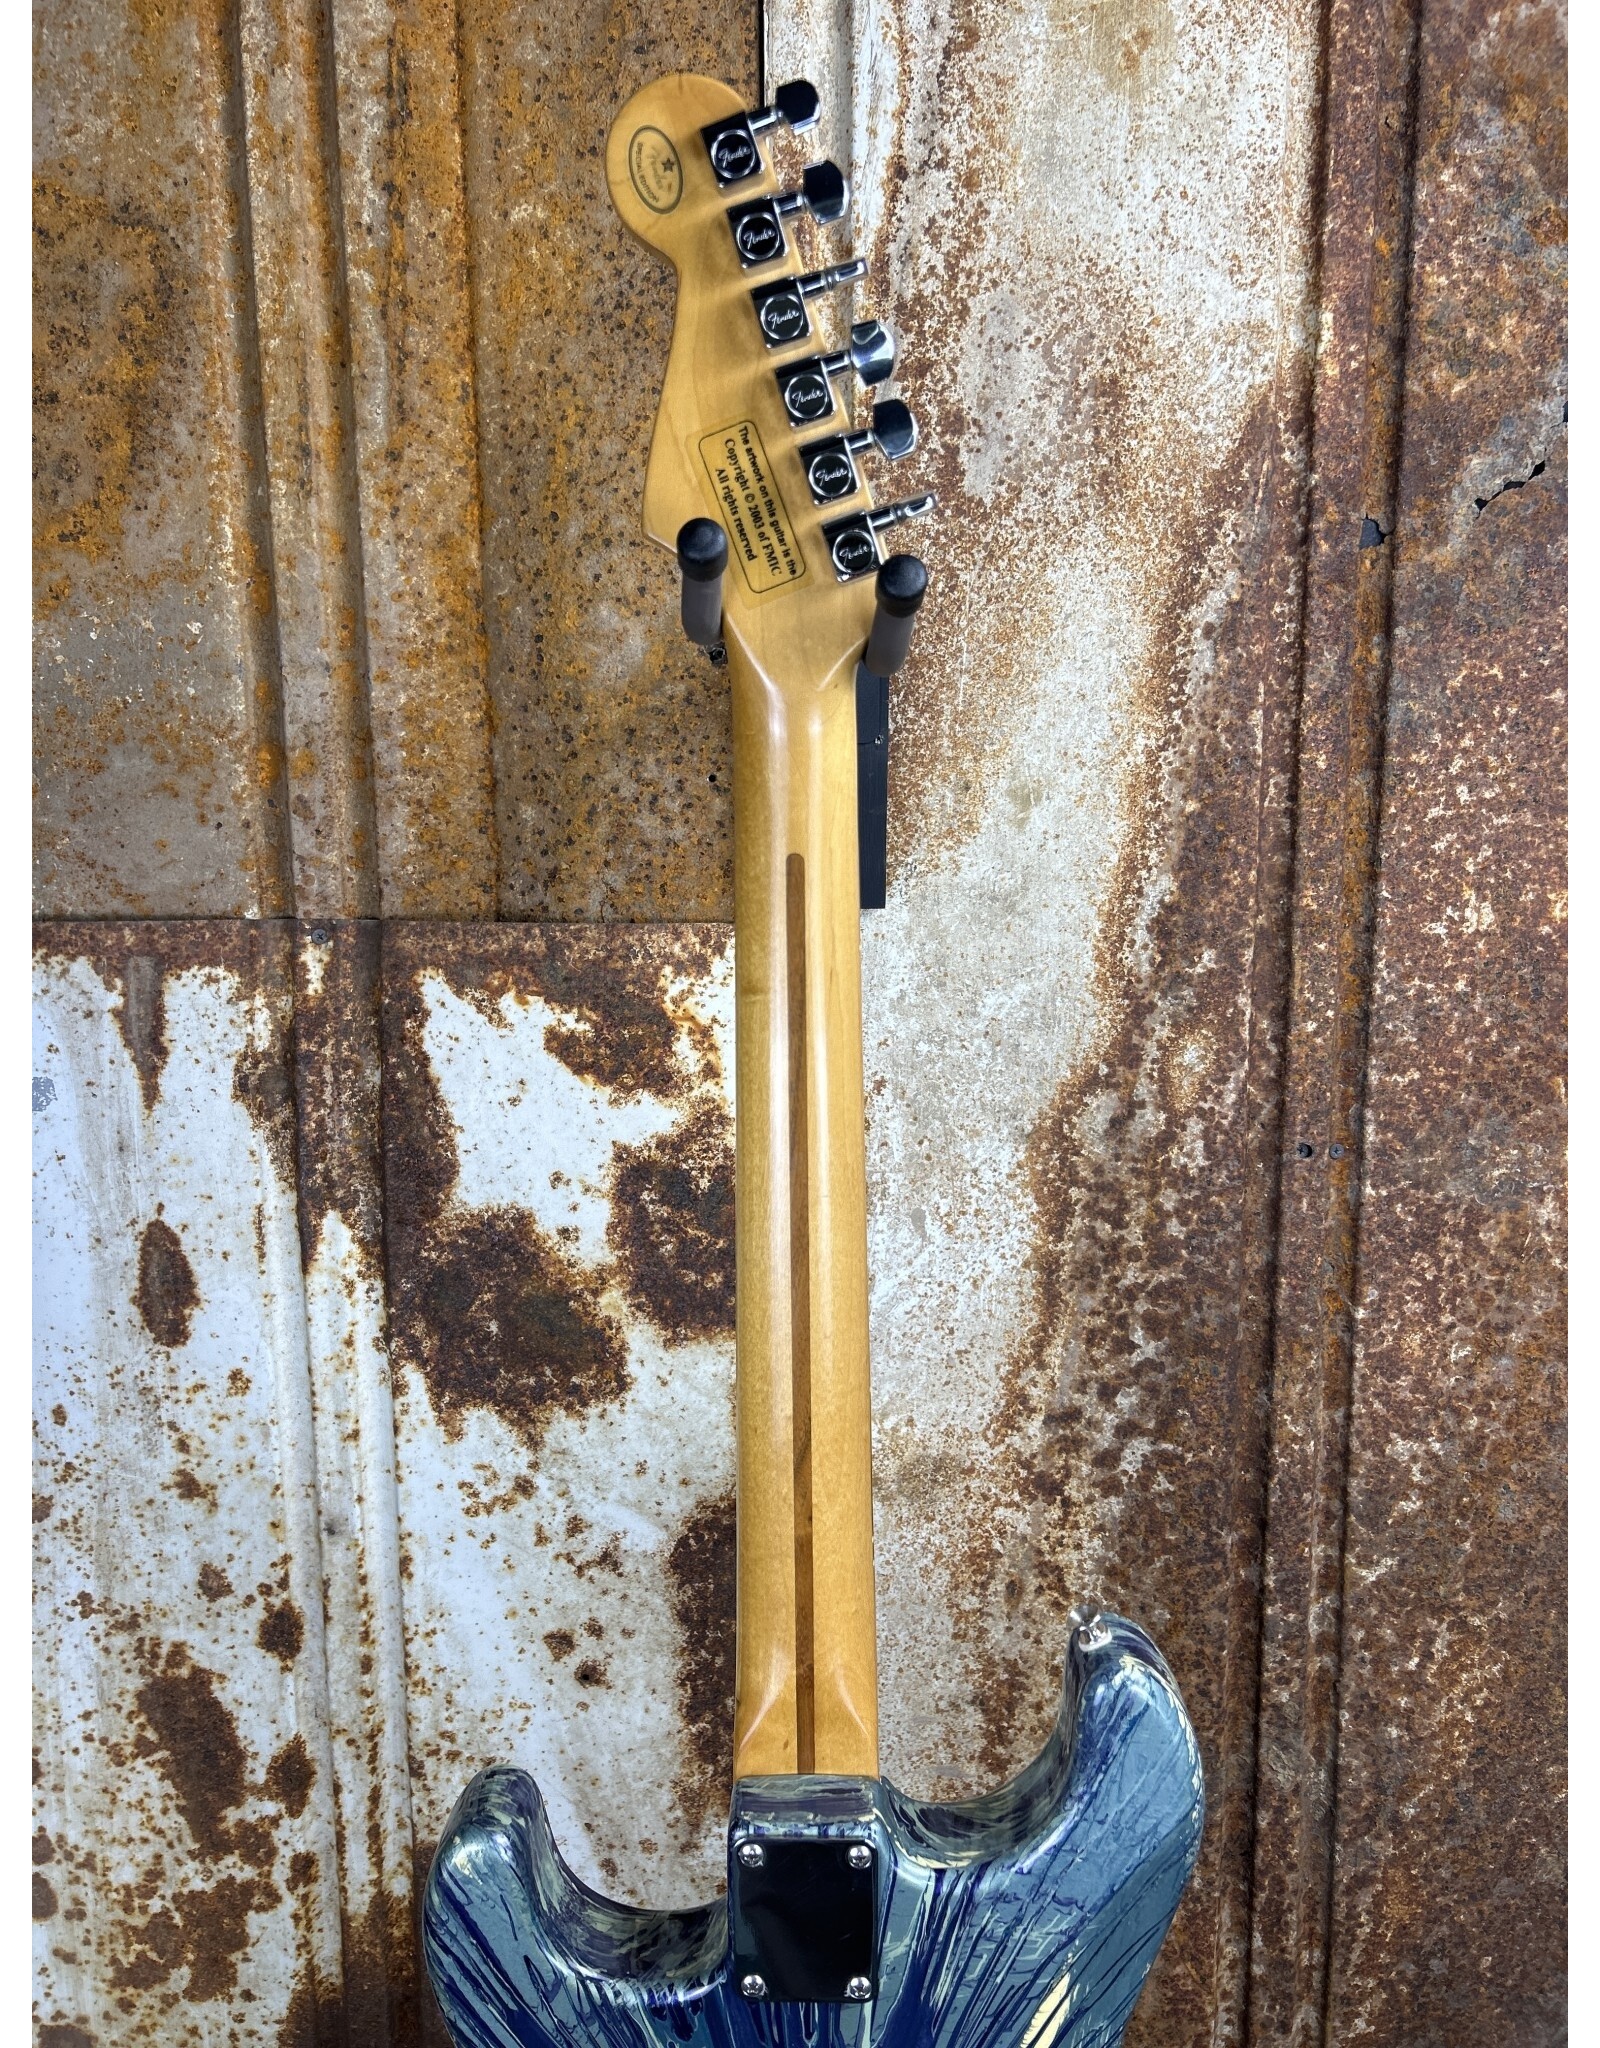 Fender Fender FSR Splattercaster Standard Stratocaster 2003 Midnight Blue Swirl over Olympic White (Used)